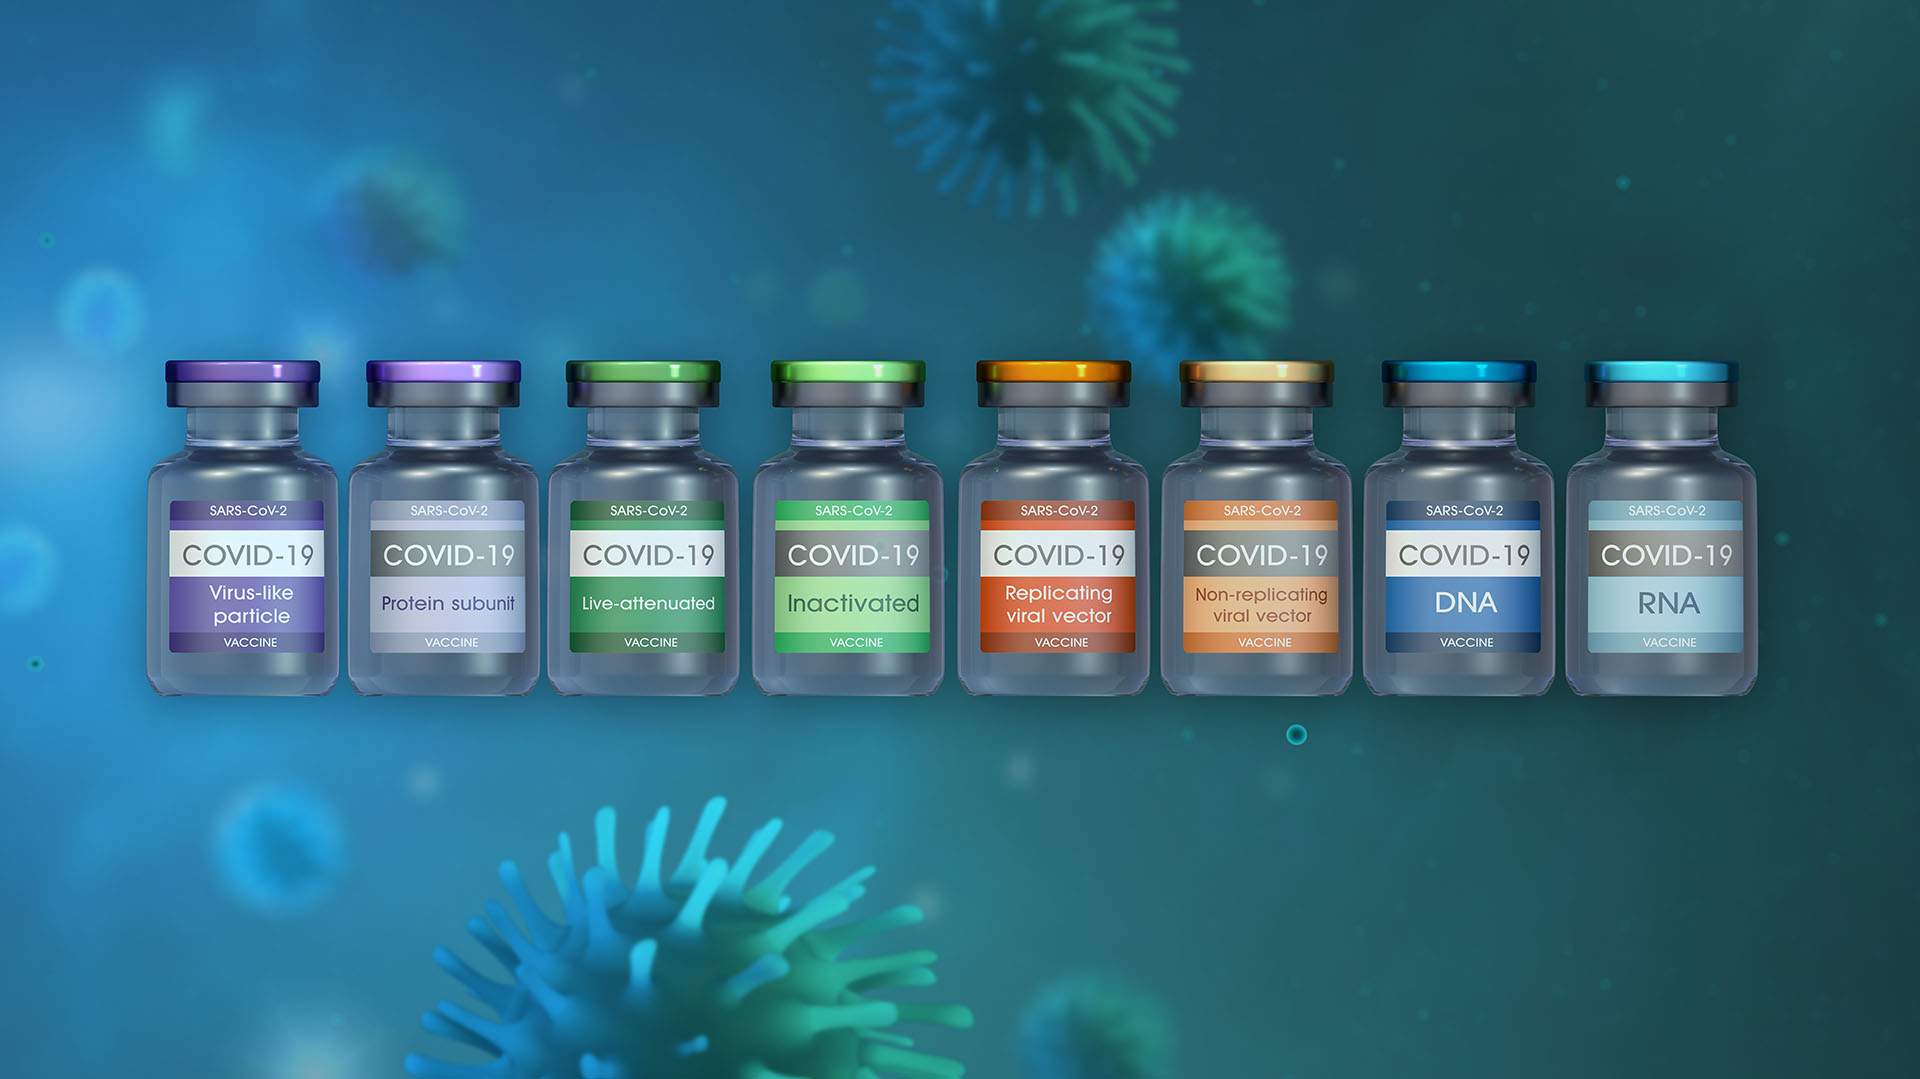 Ya son varias las vacunas desarrolladas y aprobadas contra COVID-19 (Shutterstock.com)